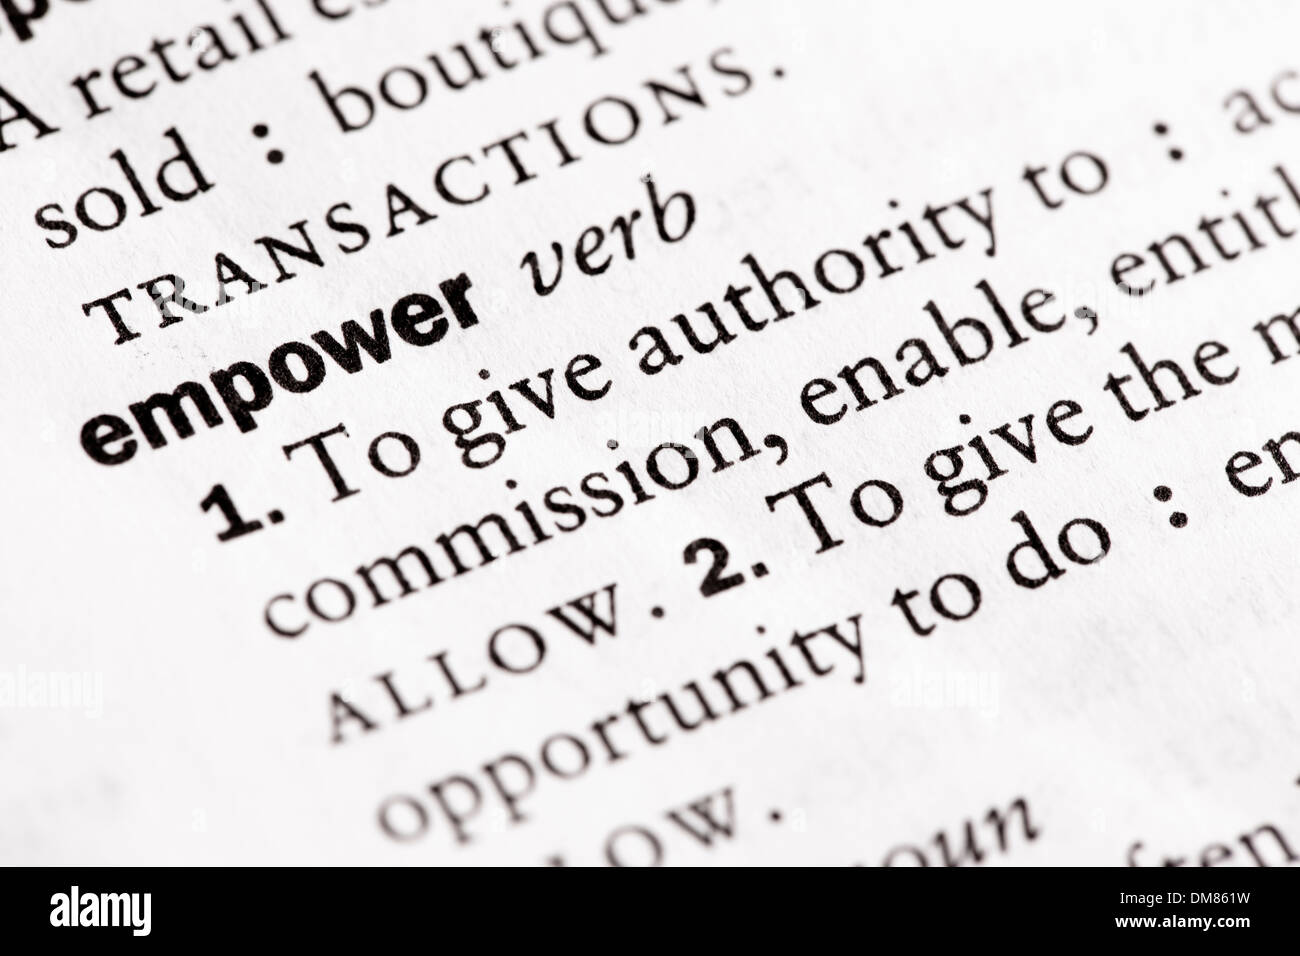 Wörterbuch-Definition von "Empower" Stockfoto